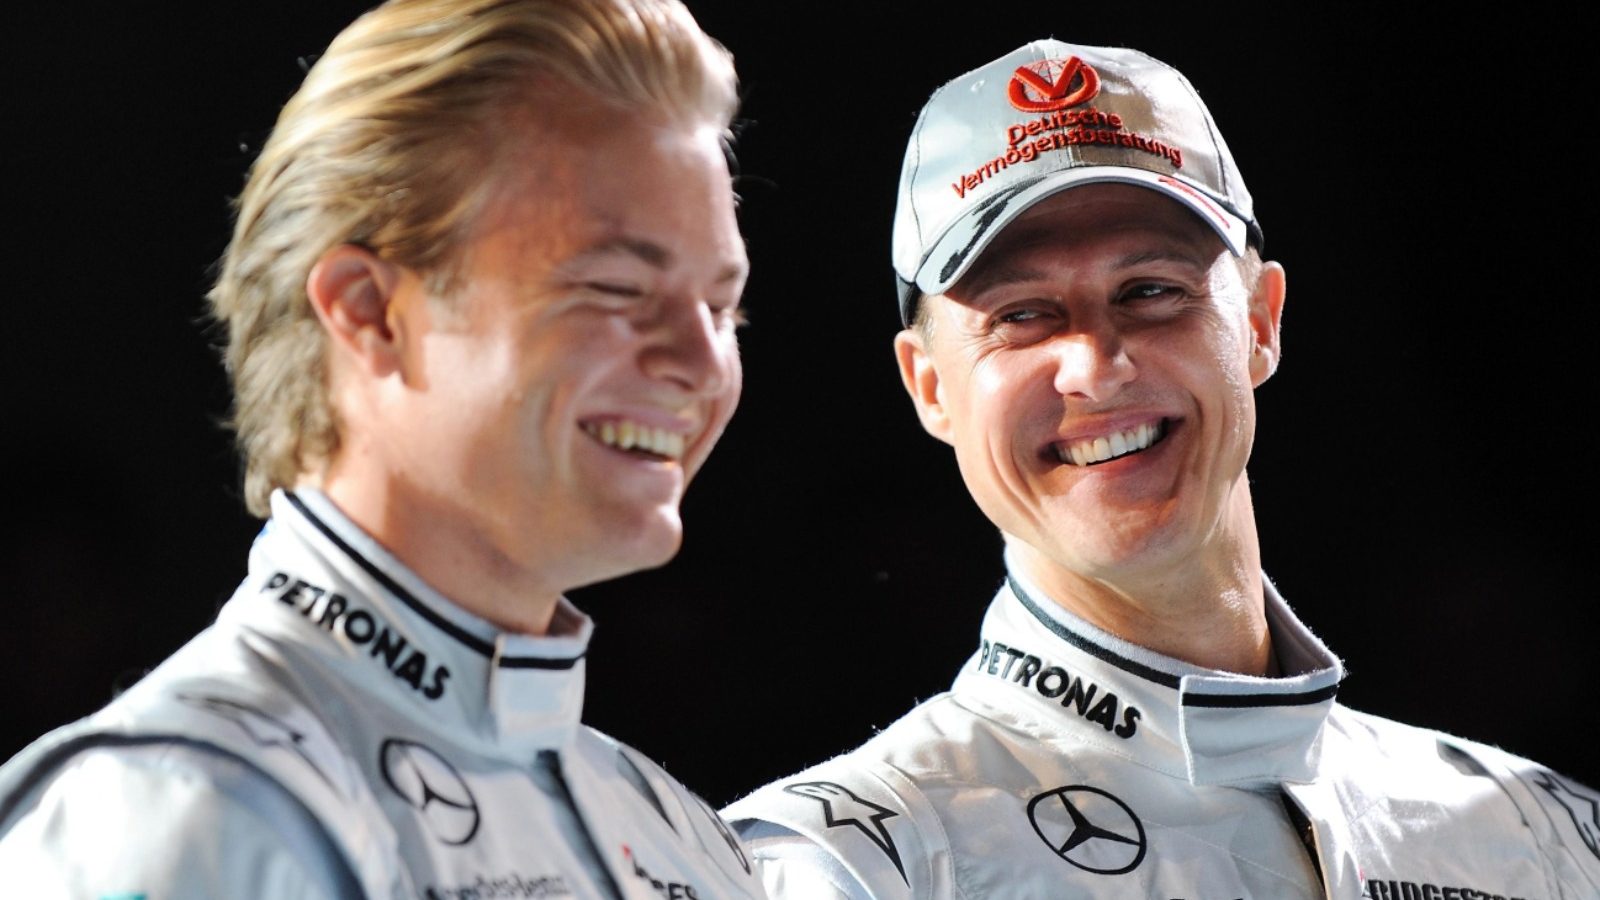 尼科-罗斯伯格和迈克尔-舒马赫在笑。2010年1月德国斯图加特